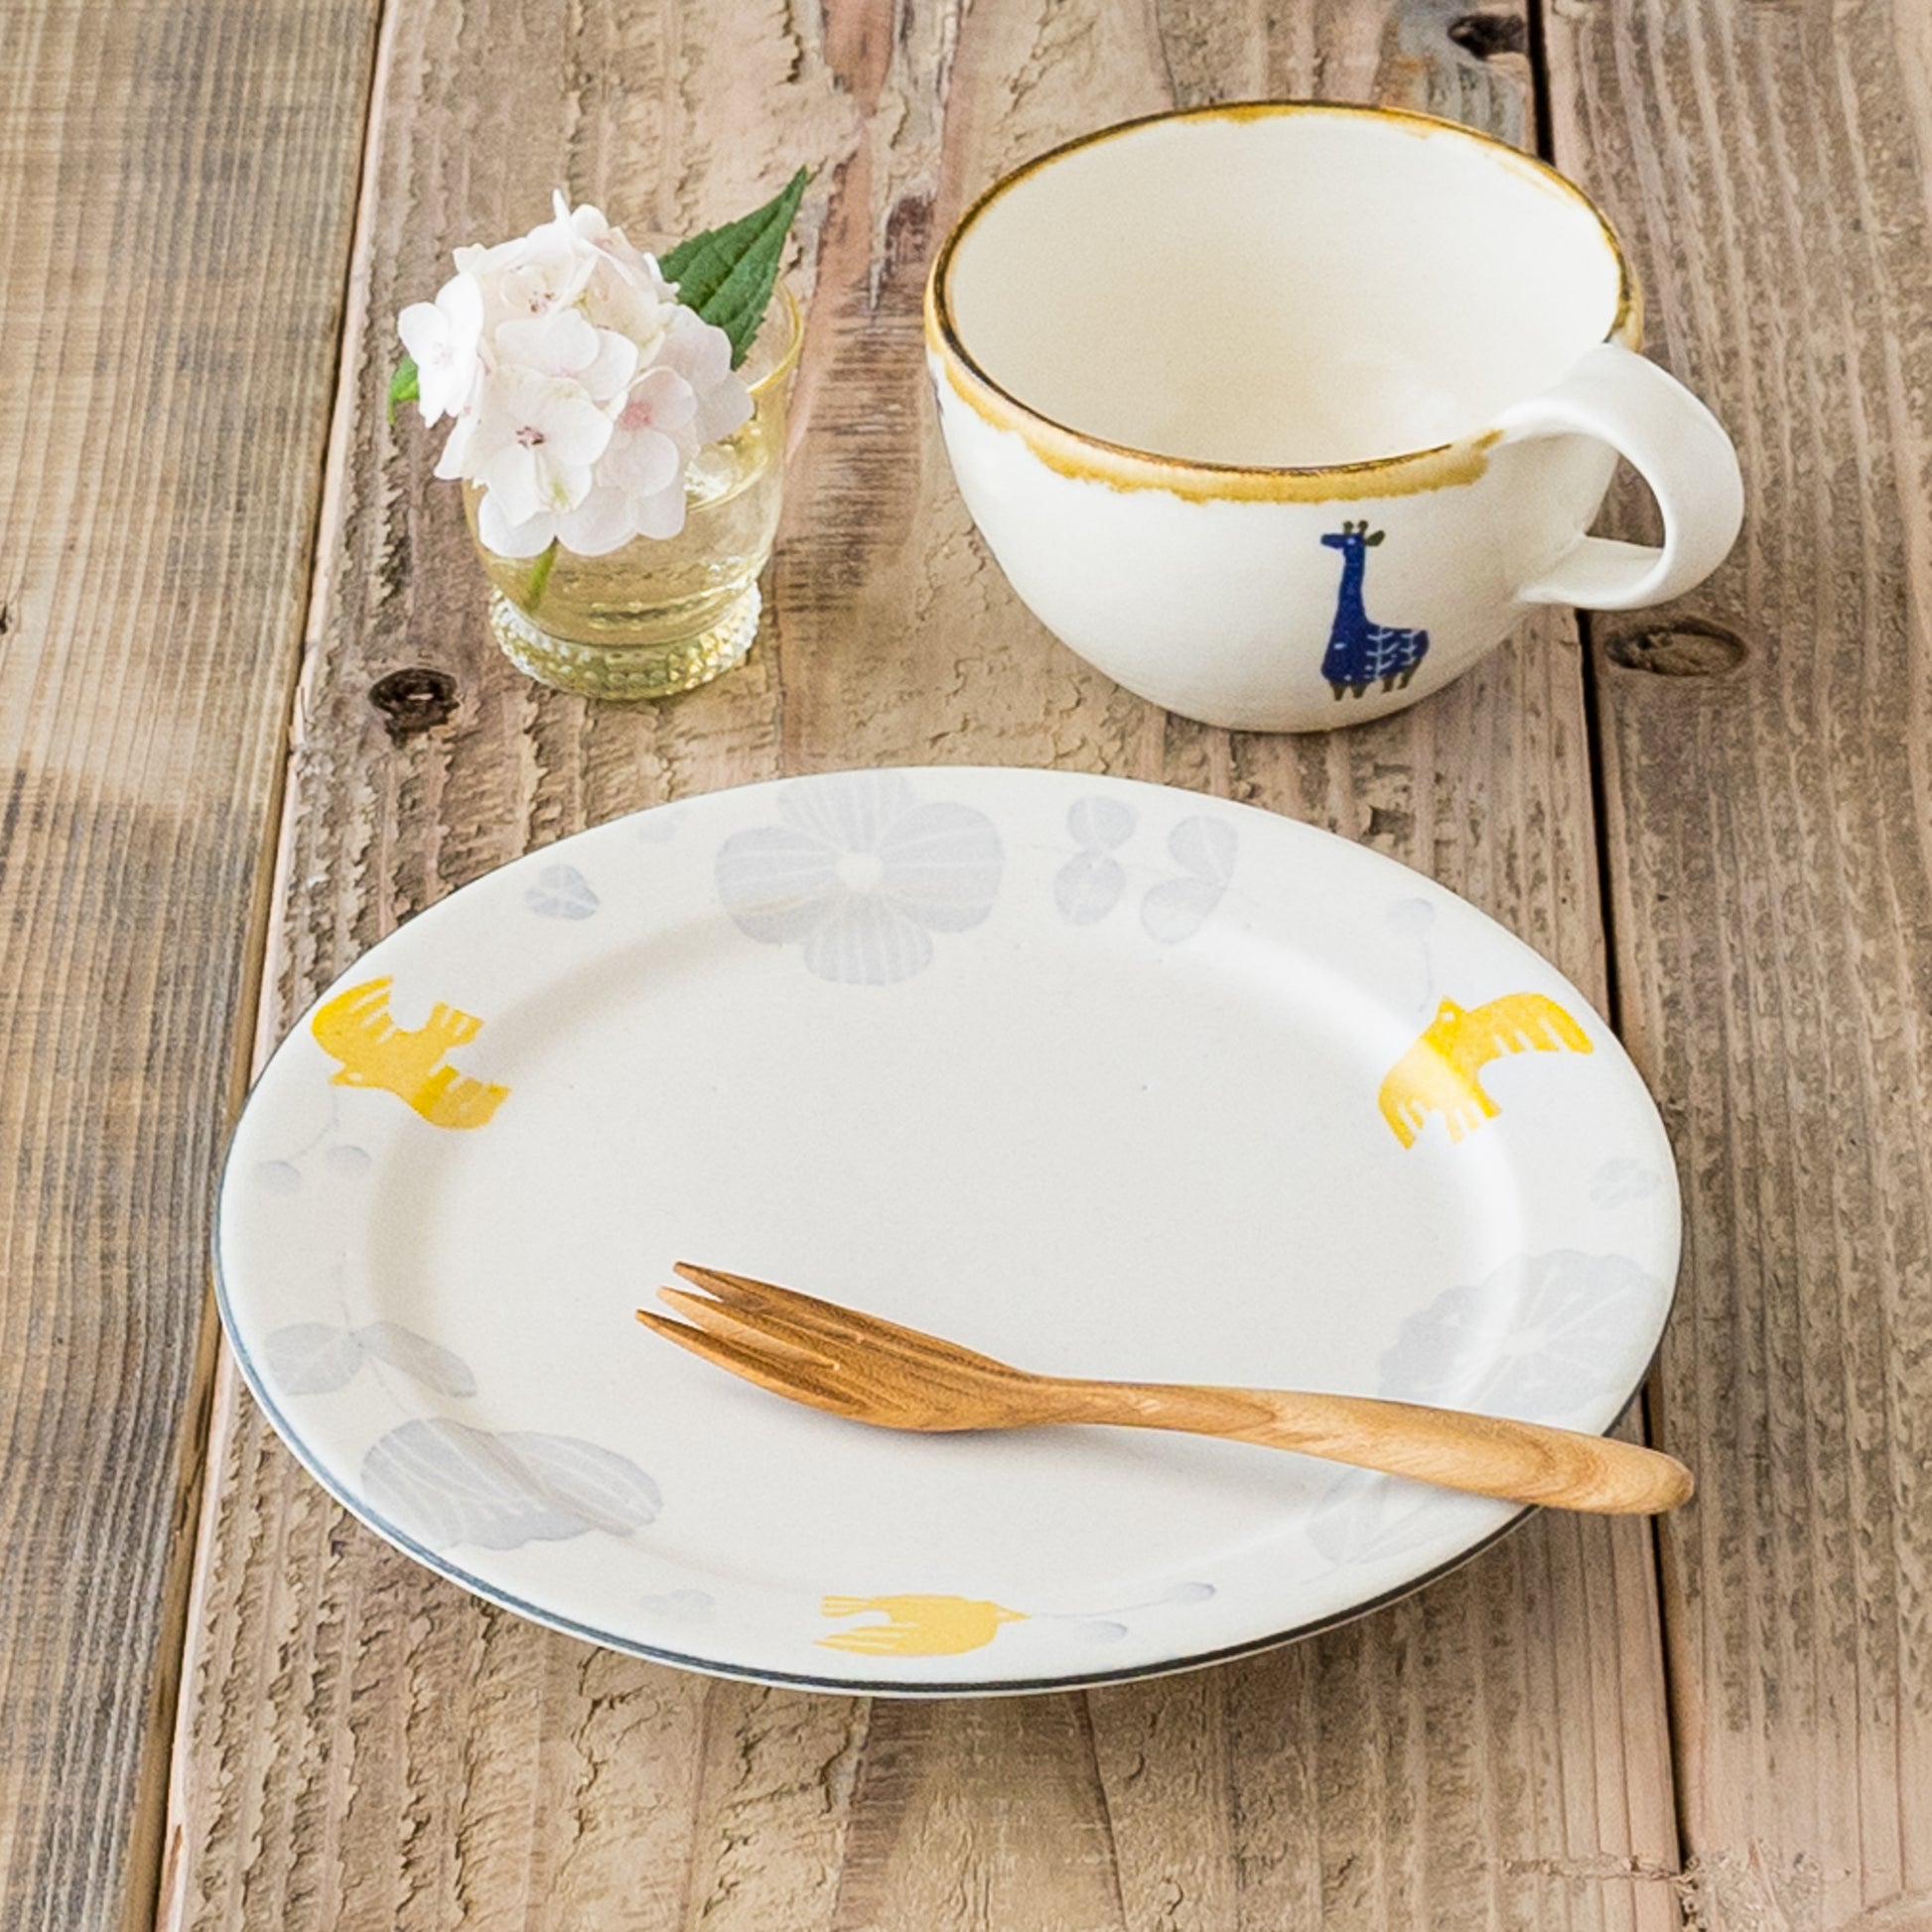 食卓を書かるく可愛く彩ってくれる安見工房の和紙染めの6寸リム皿と丸マグ